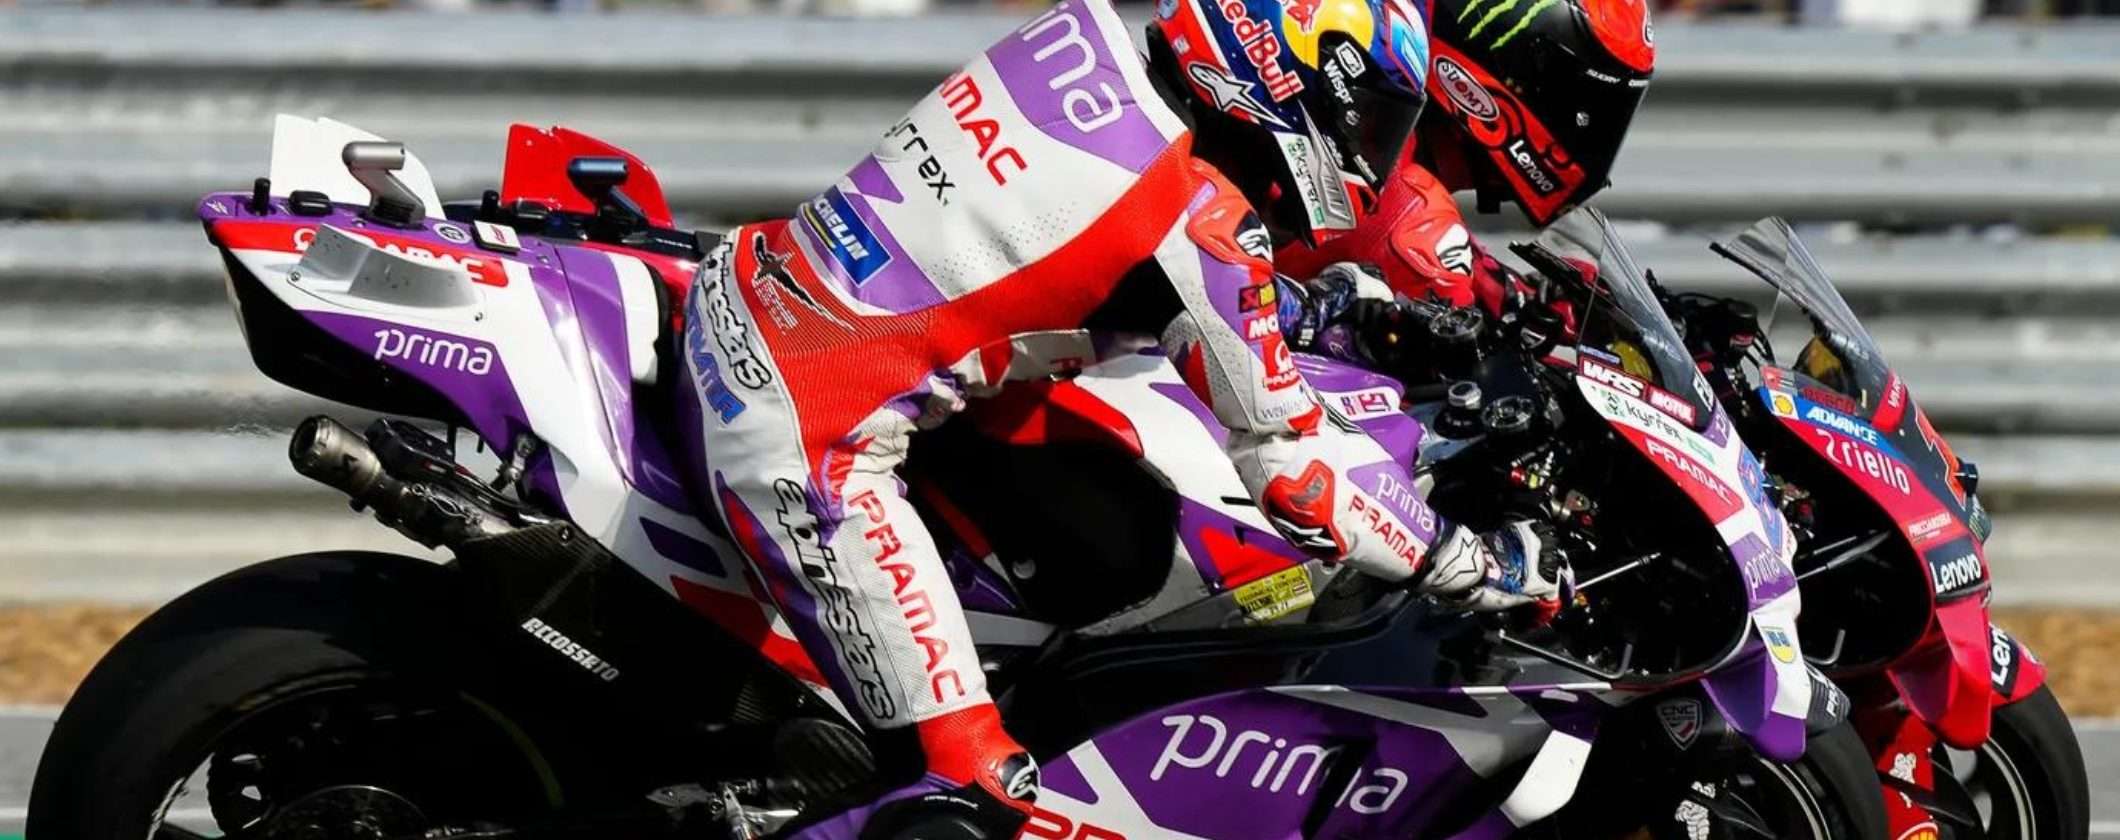 MotoGP: come vedere il GP della Malesia in streaming dall'estero